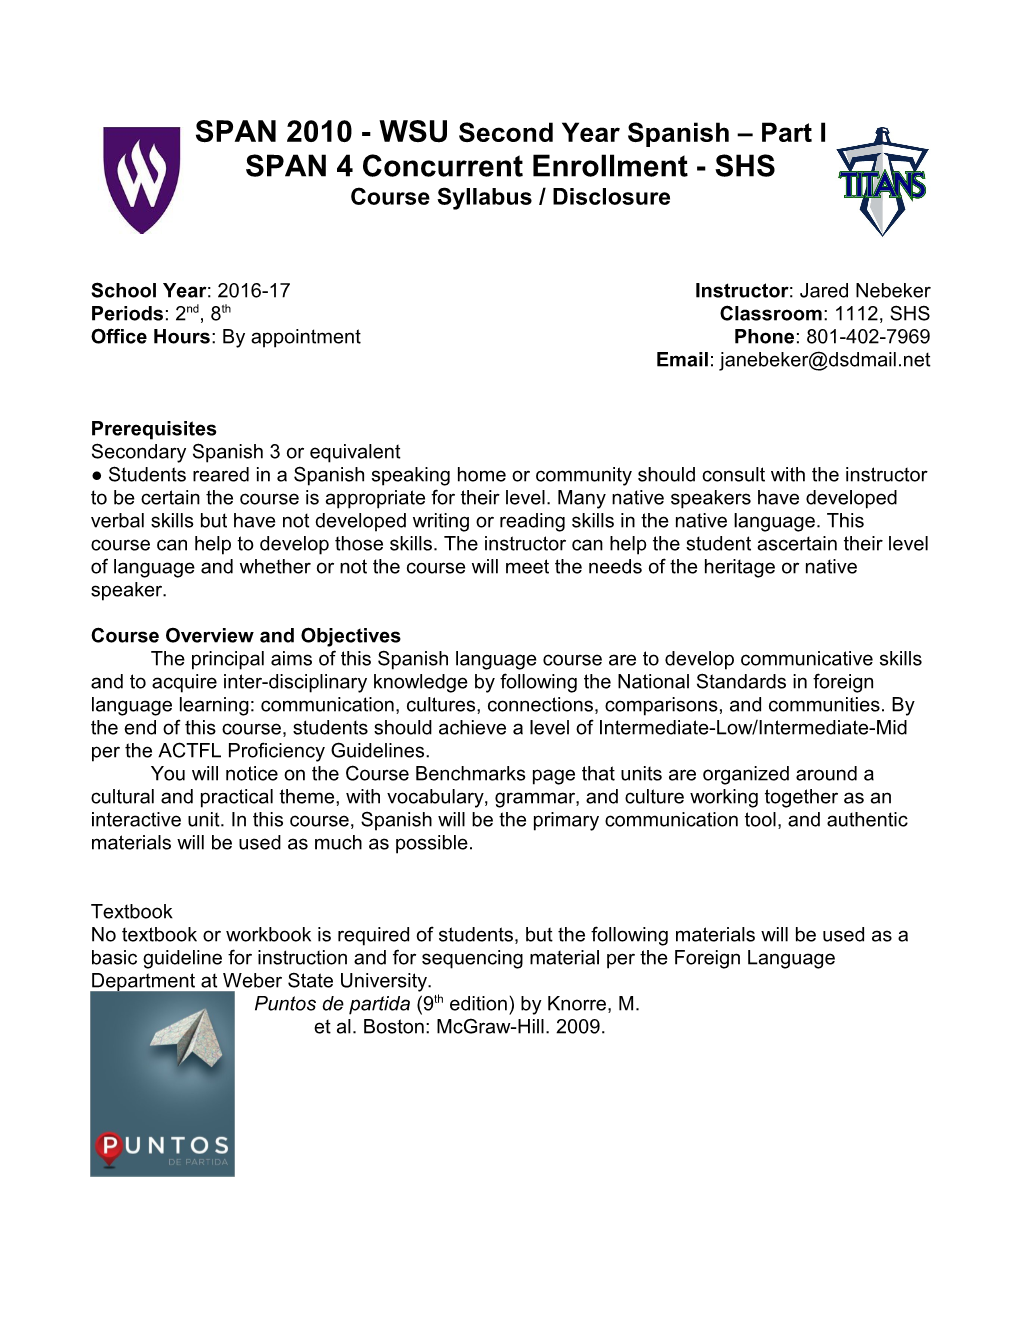 SPAN 4 Concurrent Enrollment - SHS